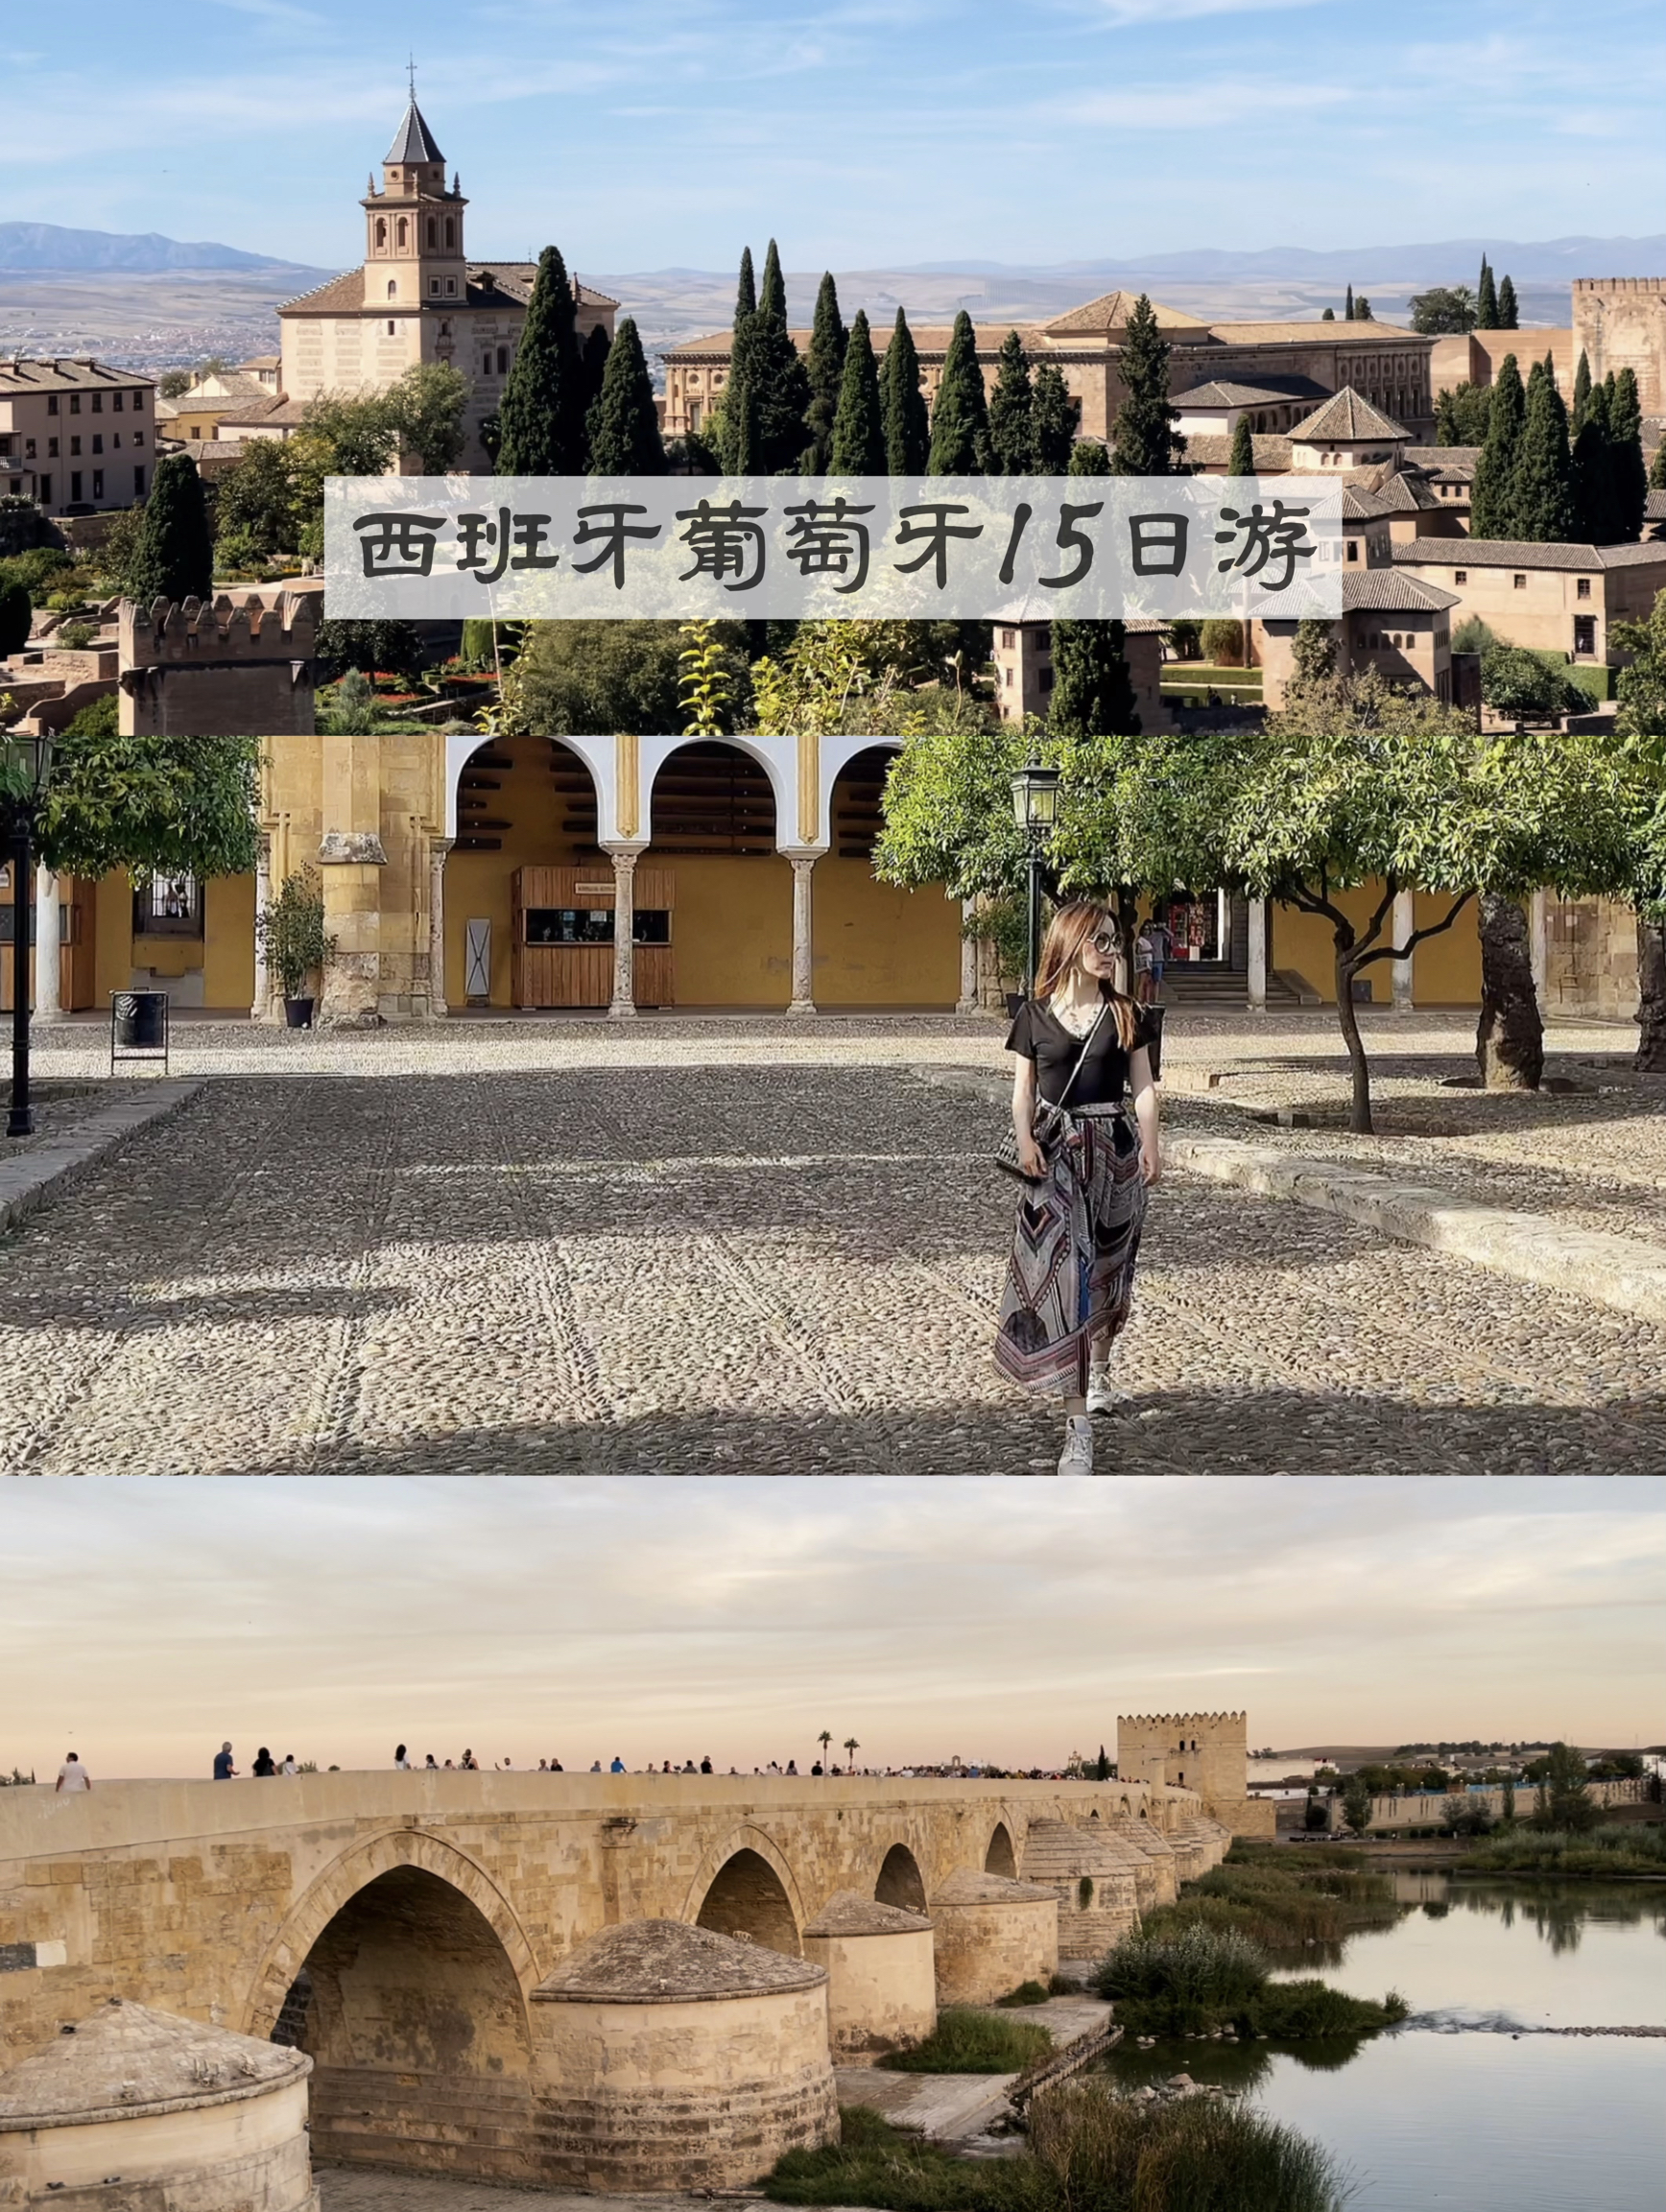 西班牙葡萄牙15日游|阿尔罕布拉宫、科尔多瓦清真寺、古罗马桥